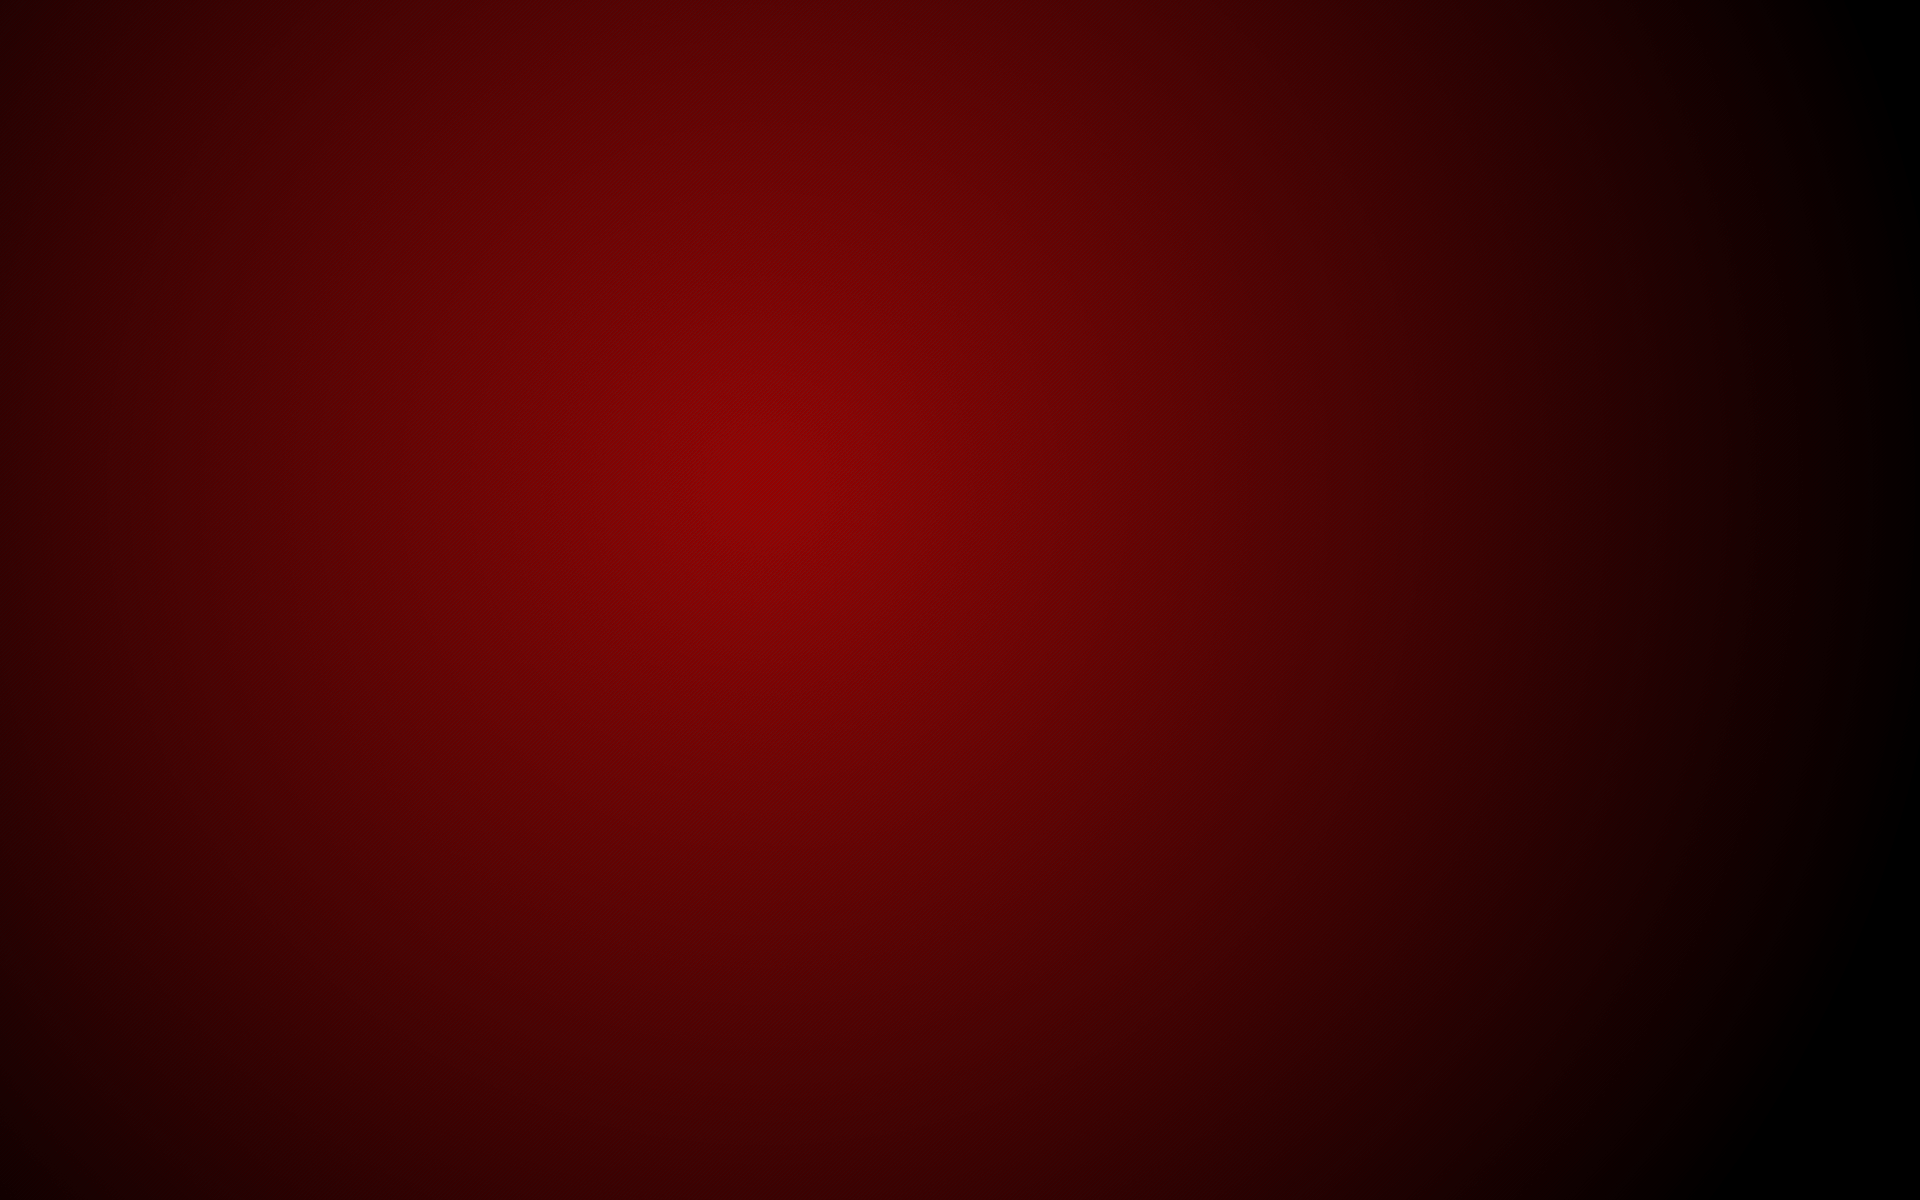 Hình nền Gradient đỏ: Bạn muốn sự nổi bật và rực rỡ cho màn hình thiết bị của mình? Chúng tôi giới thiệu đến bạn hình nền Gradient đỏ tuyệt đẹp, mang đến cảm giác cực kỳ phấn khích và sôi động.